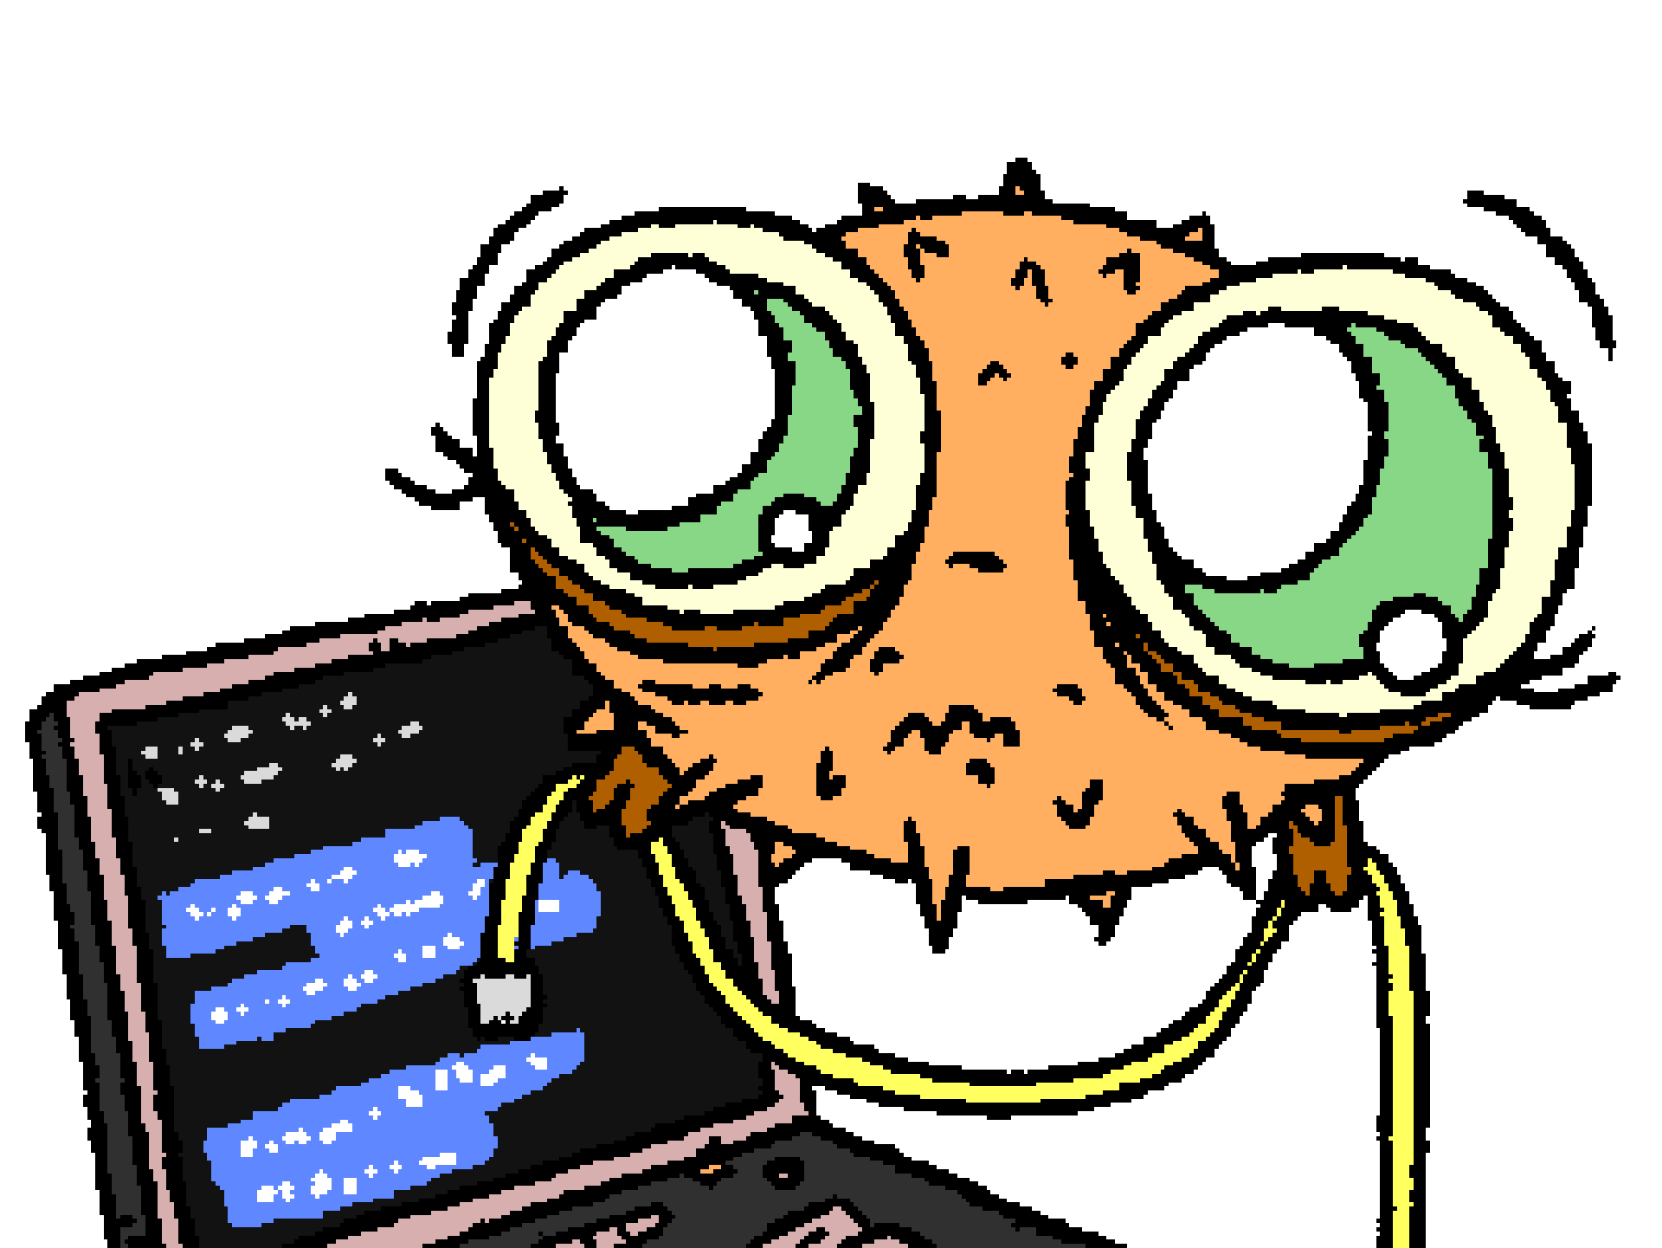 Un pequeÃ±o Puffy con grandes ojos tiernos sosteniendo un cable de red. El fondo presenta una computadora portÃ¡til, en su pantalla hay texto destacado en azul en una terminal.